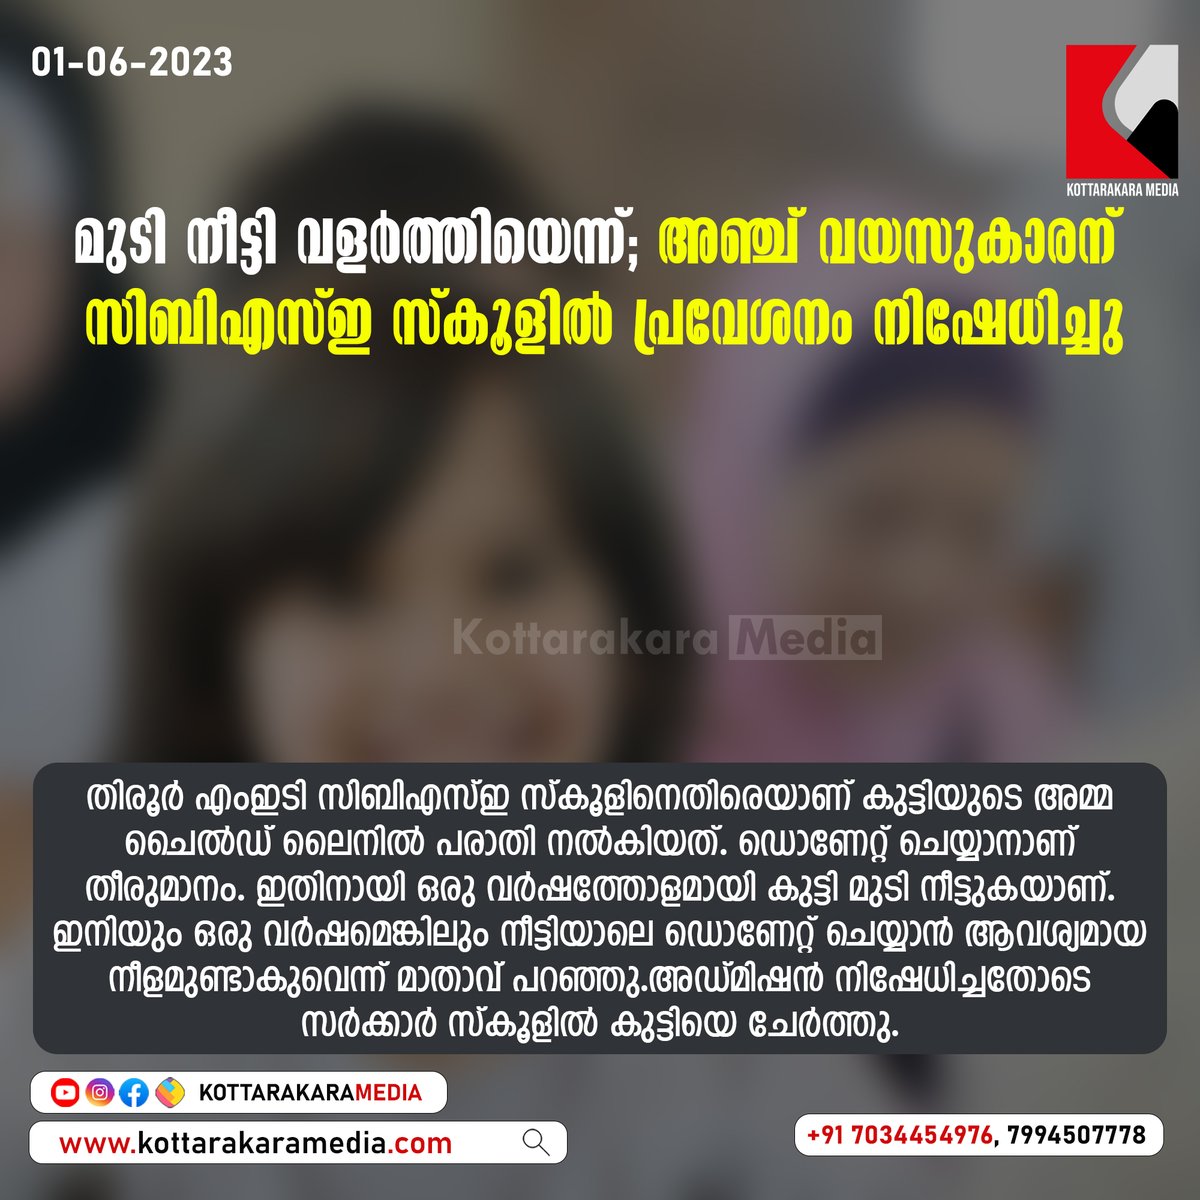 മുടി നീട്ടി വളർത്തിയെന്ന്; അഞ്ച് വയസുകാരന് സിബിഎസ്‌ഇ സ്കൂളിൽ പ്രവേശനം നിഷേധിച്ചു
#hair #longhair #CBSESchool #malappuram #noaddmission #tirur #childline #complainted #parents #hairdonation #Kollam #Kerala #LatestNews #breakingnews #news